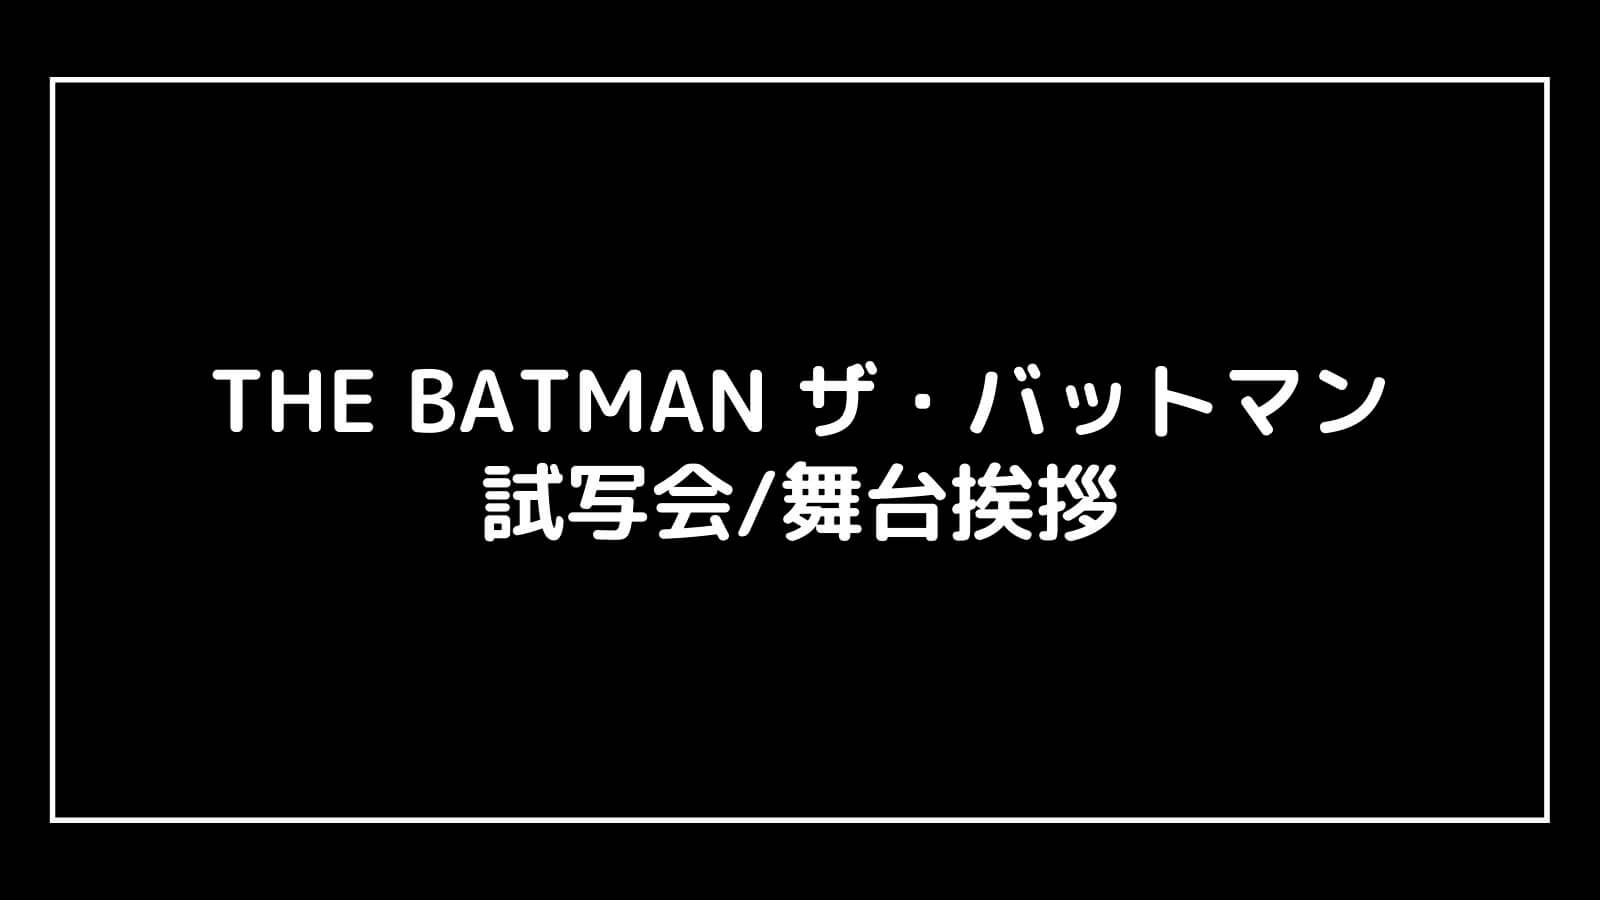 映画『THE BATMAN ザ・バットマン』の試写会と舞台挨拶ライブビューイング情報